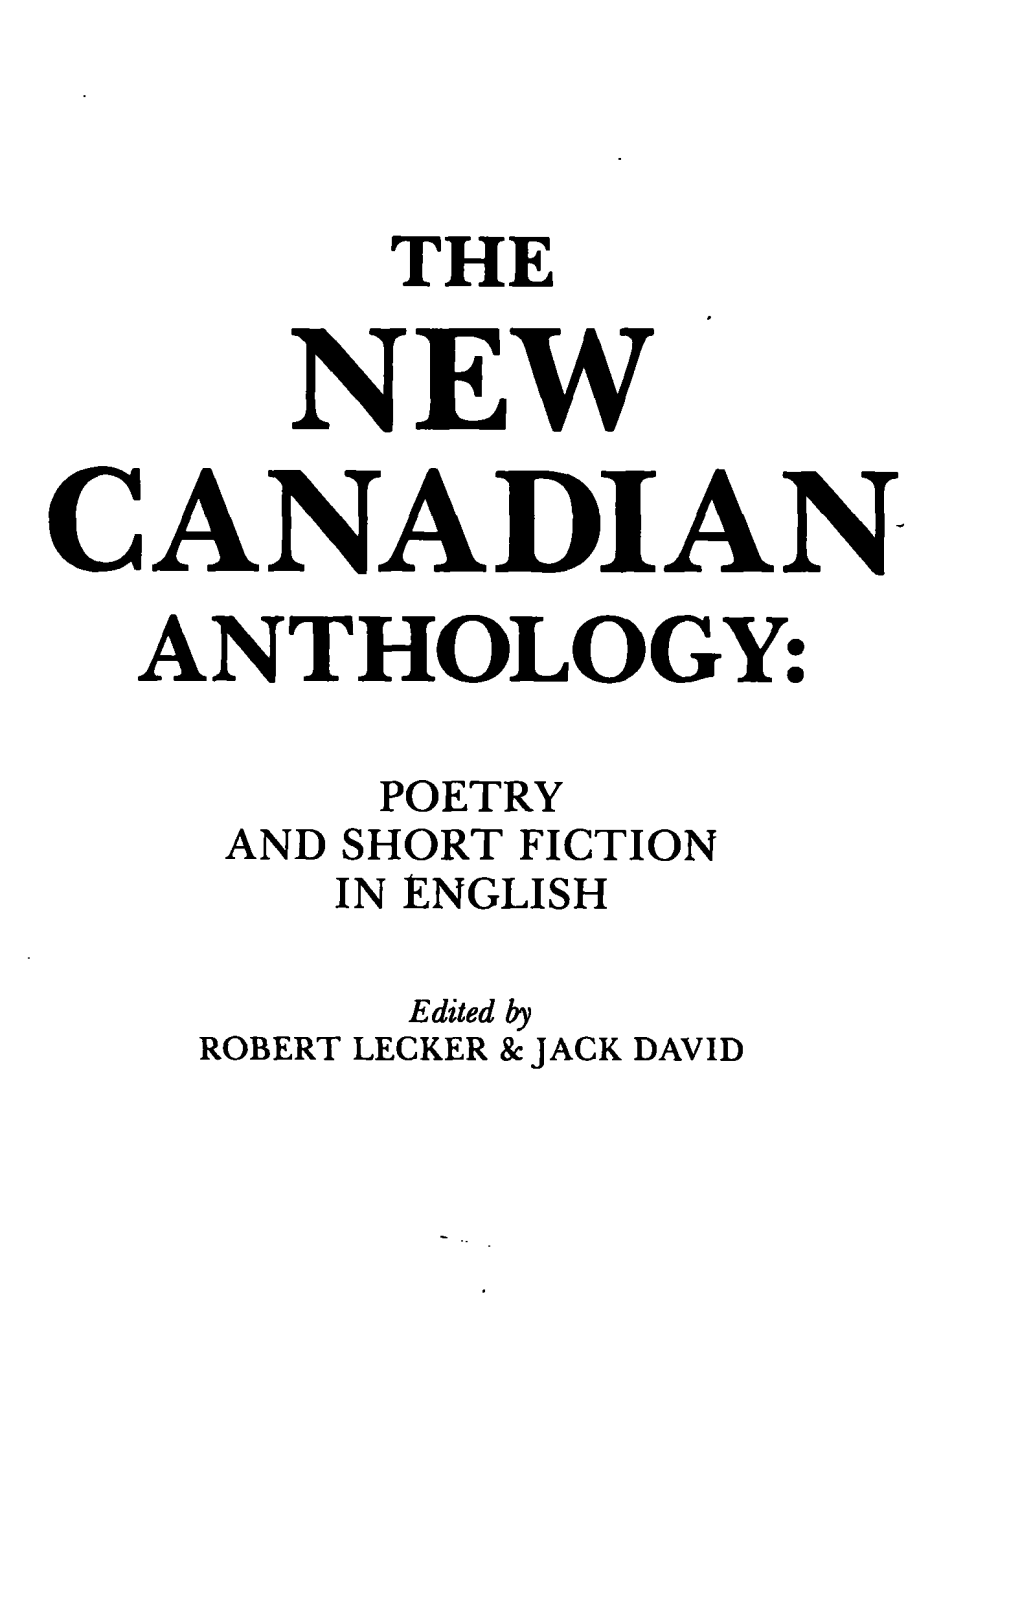 New Canadian Anthology